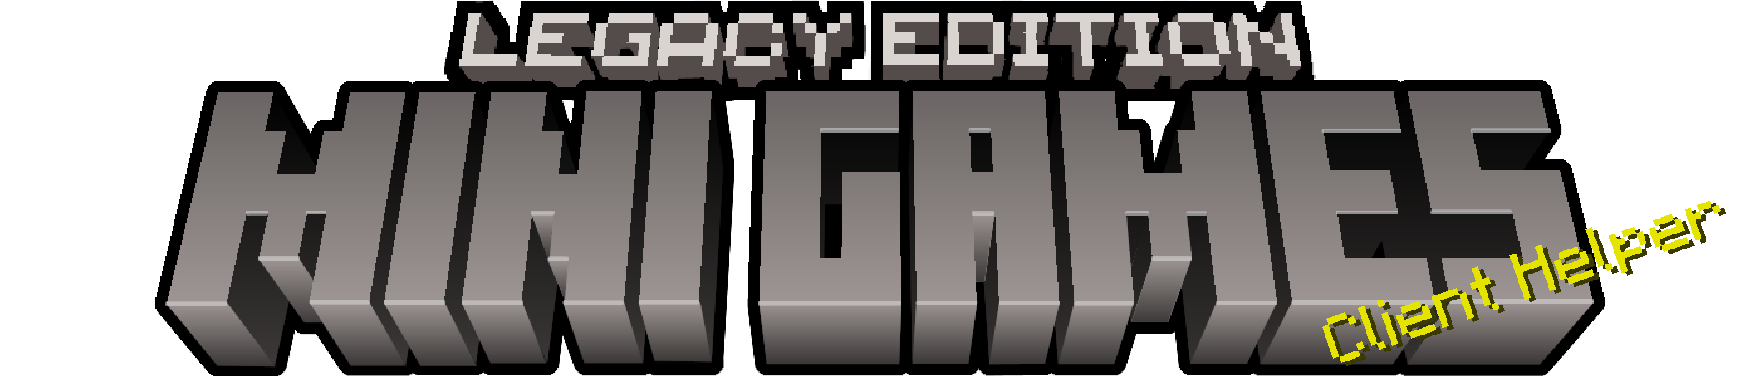 Legacy Edition Minigames Logo